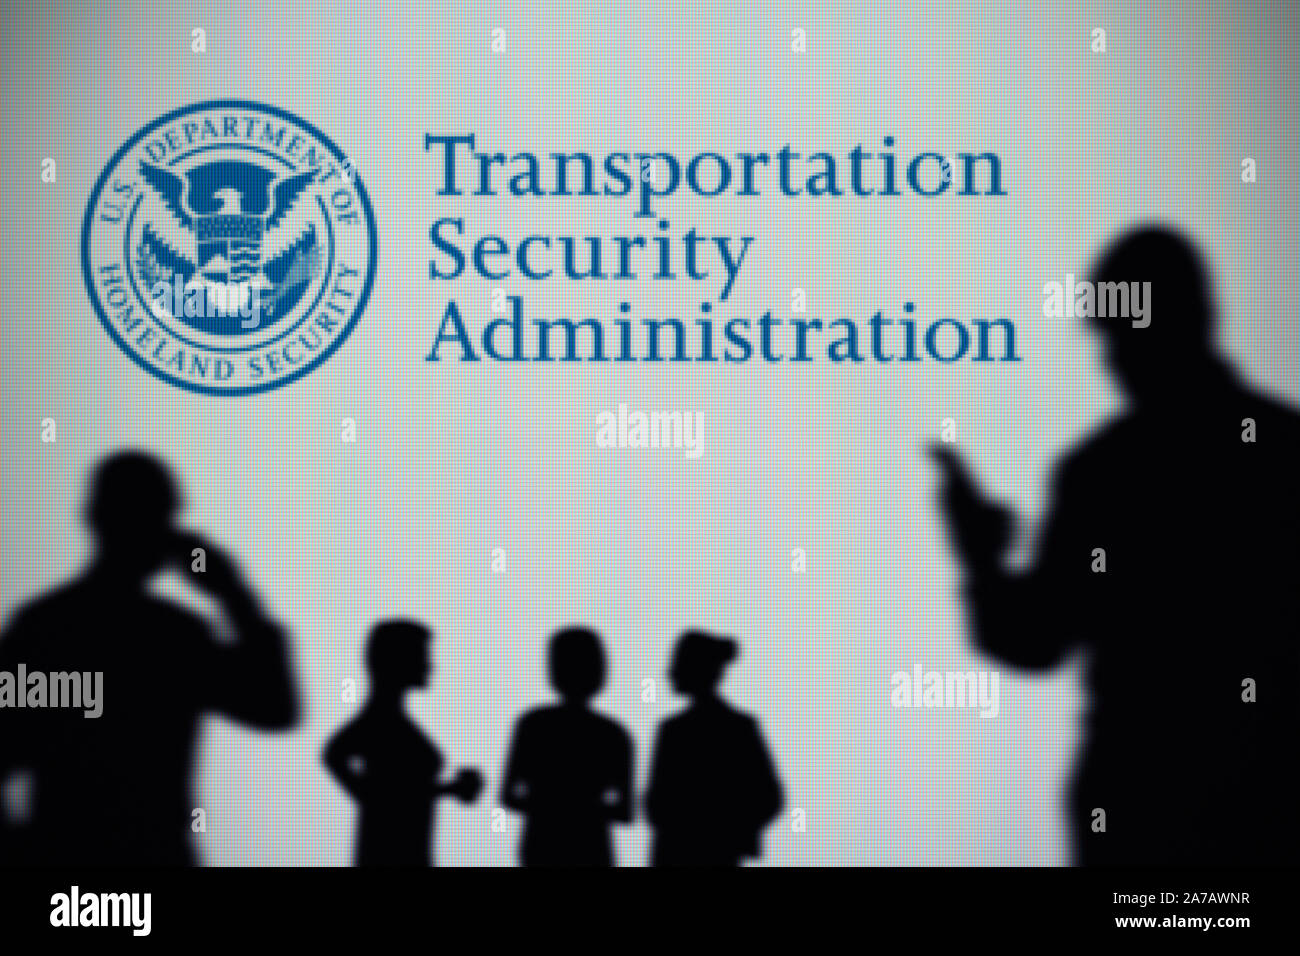 Administración de seguridad de transporte logotipo es visto en una pantalla en el fondo mientras una silueta persona utiliza un smartphone (uso Editorial solamente). Foto de stock